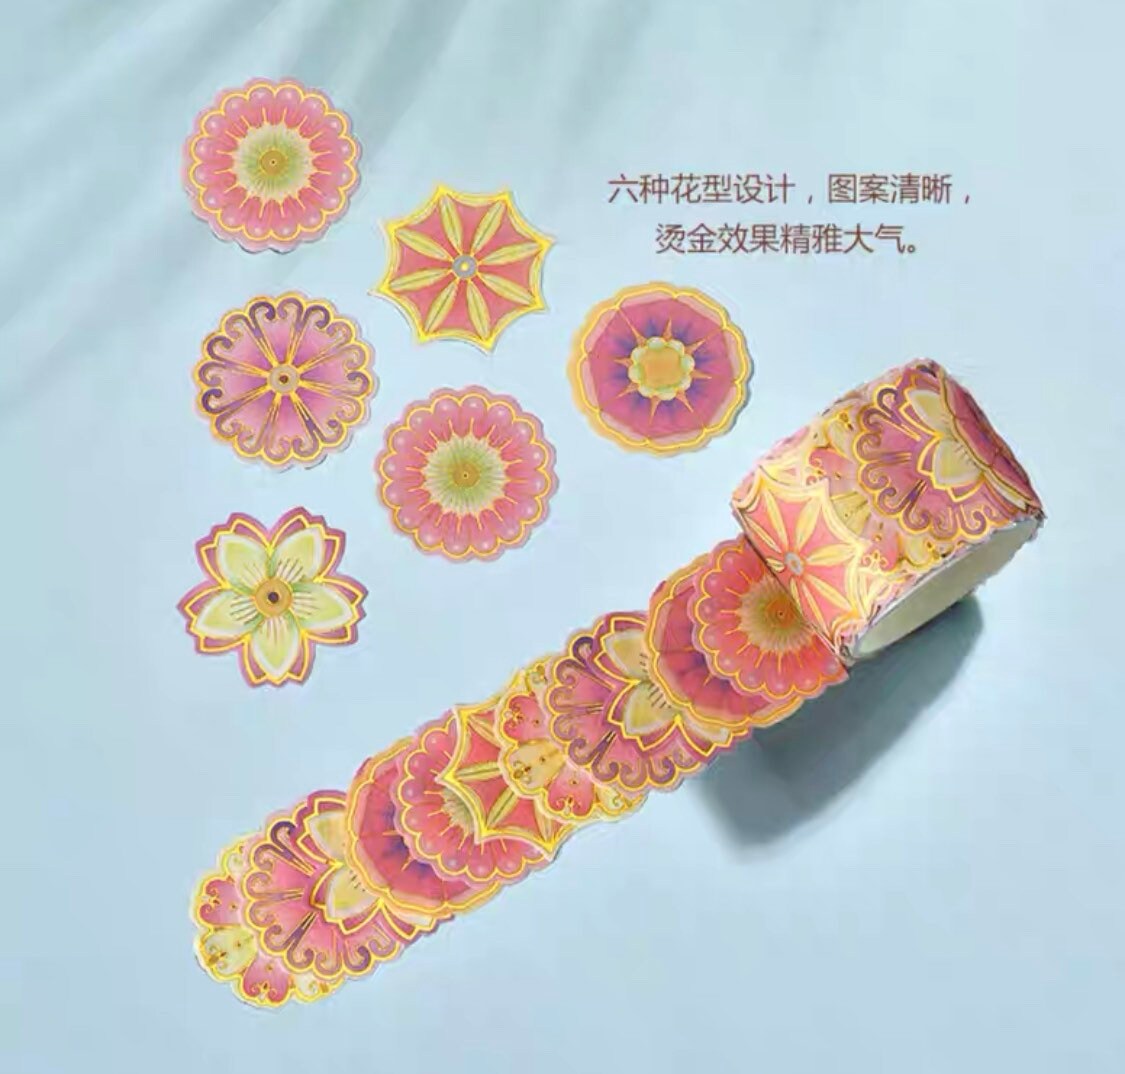 Beijing Forbidden city flower sticker roll